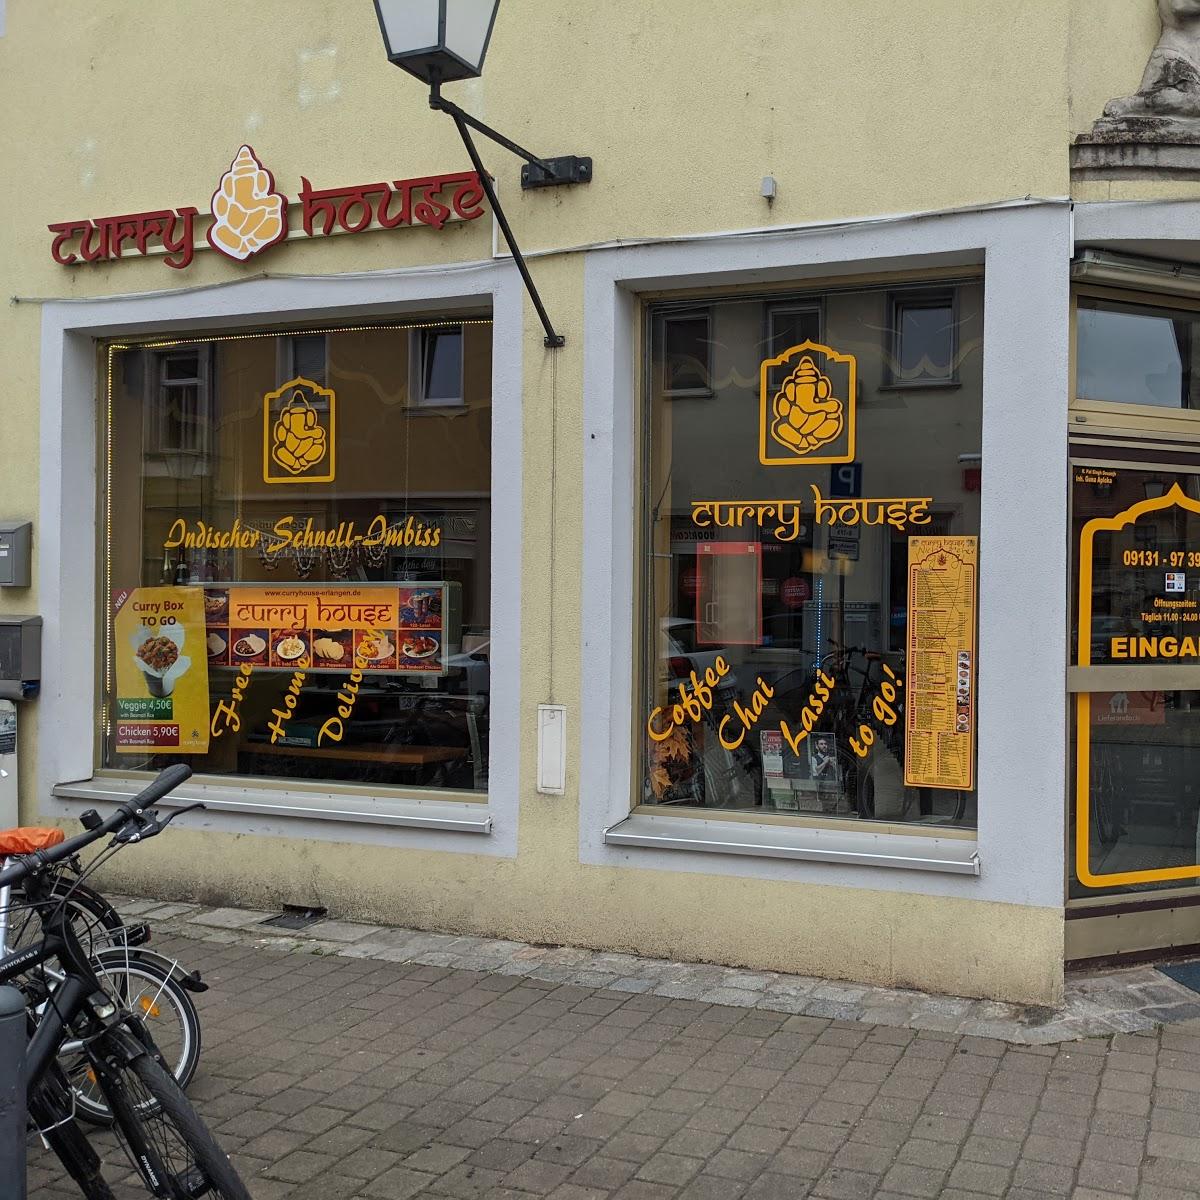 Restaurant "Curry House Restaurant" in Erlangen